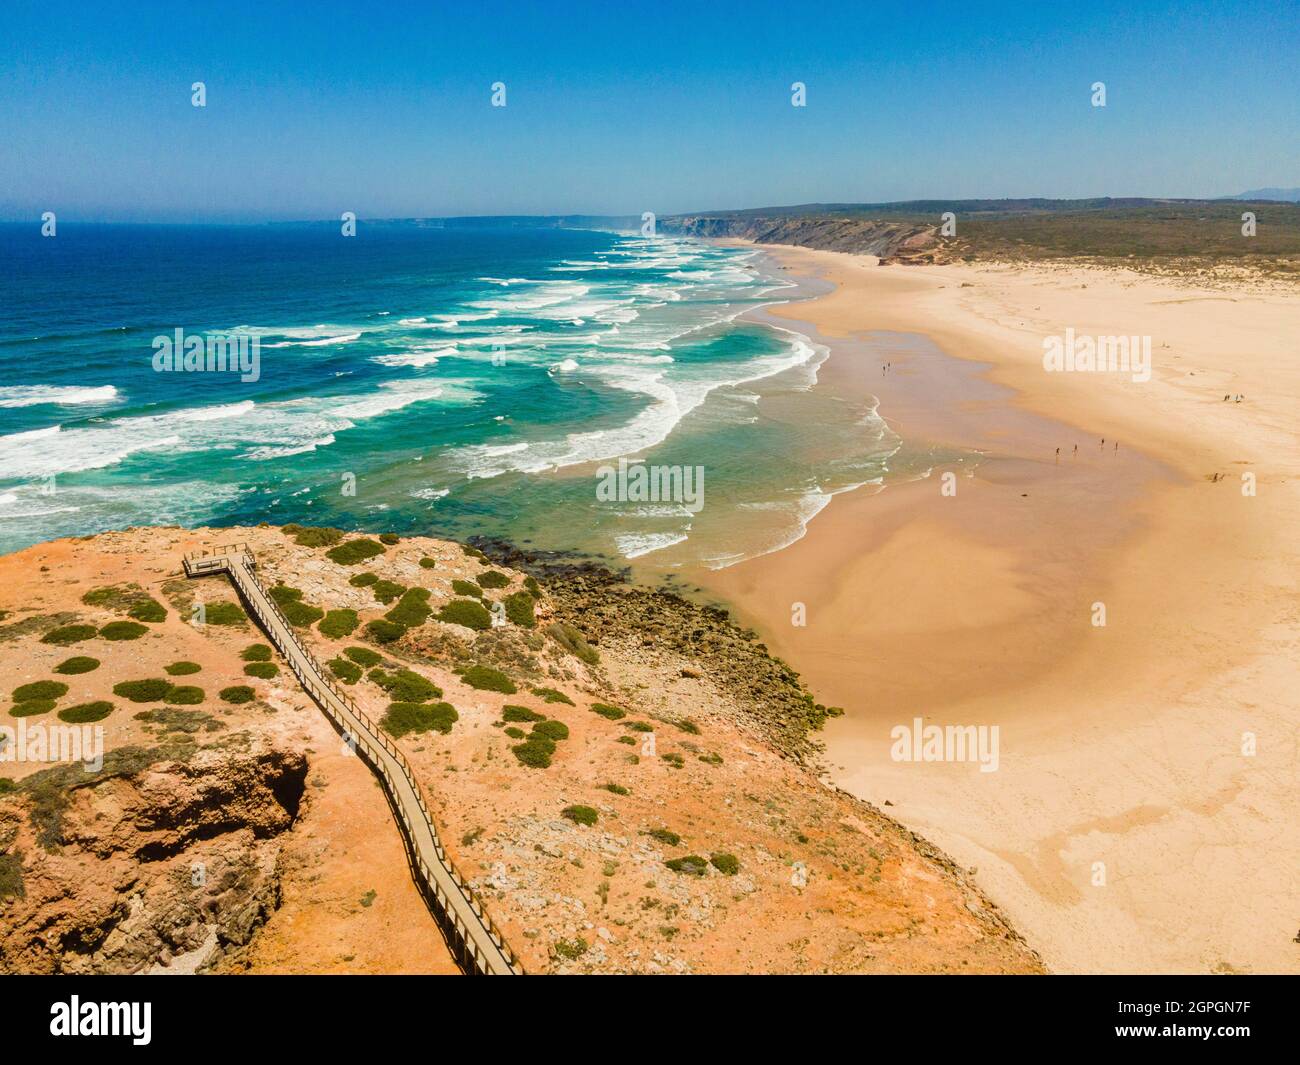 Portugal, Algarve, côte ouest de l'Atlantique, Plage de Praia da Bordeira (vue aérienne) Banque D'Images